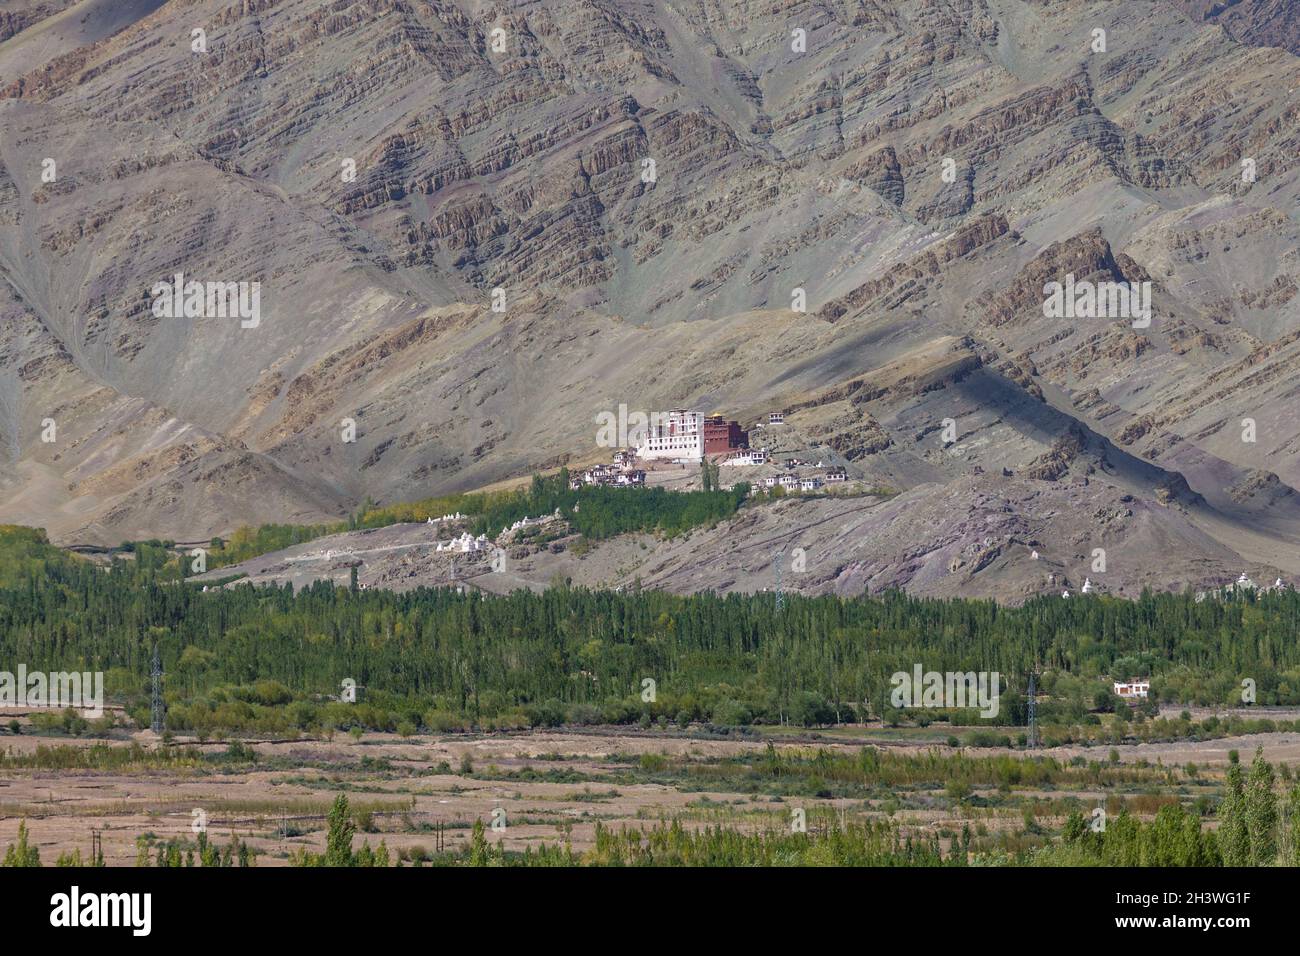 Matho Kloster mit den Sedimentgesteinen des Zanskar Gebirges im Hintergrund Stockfoto